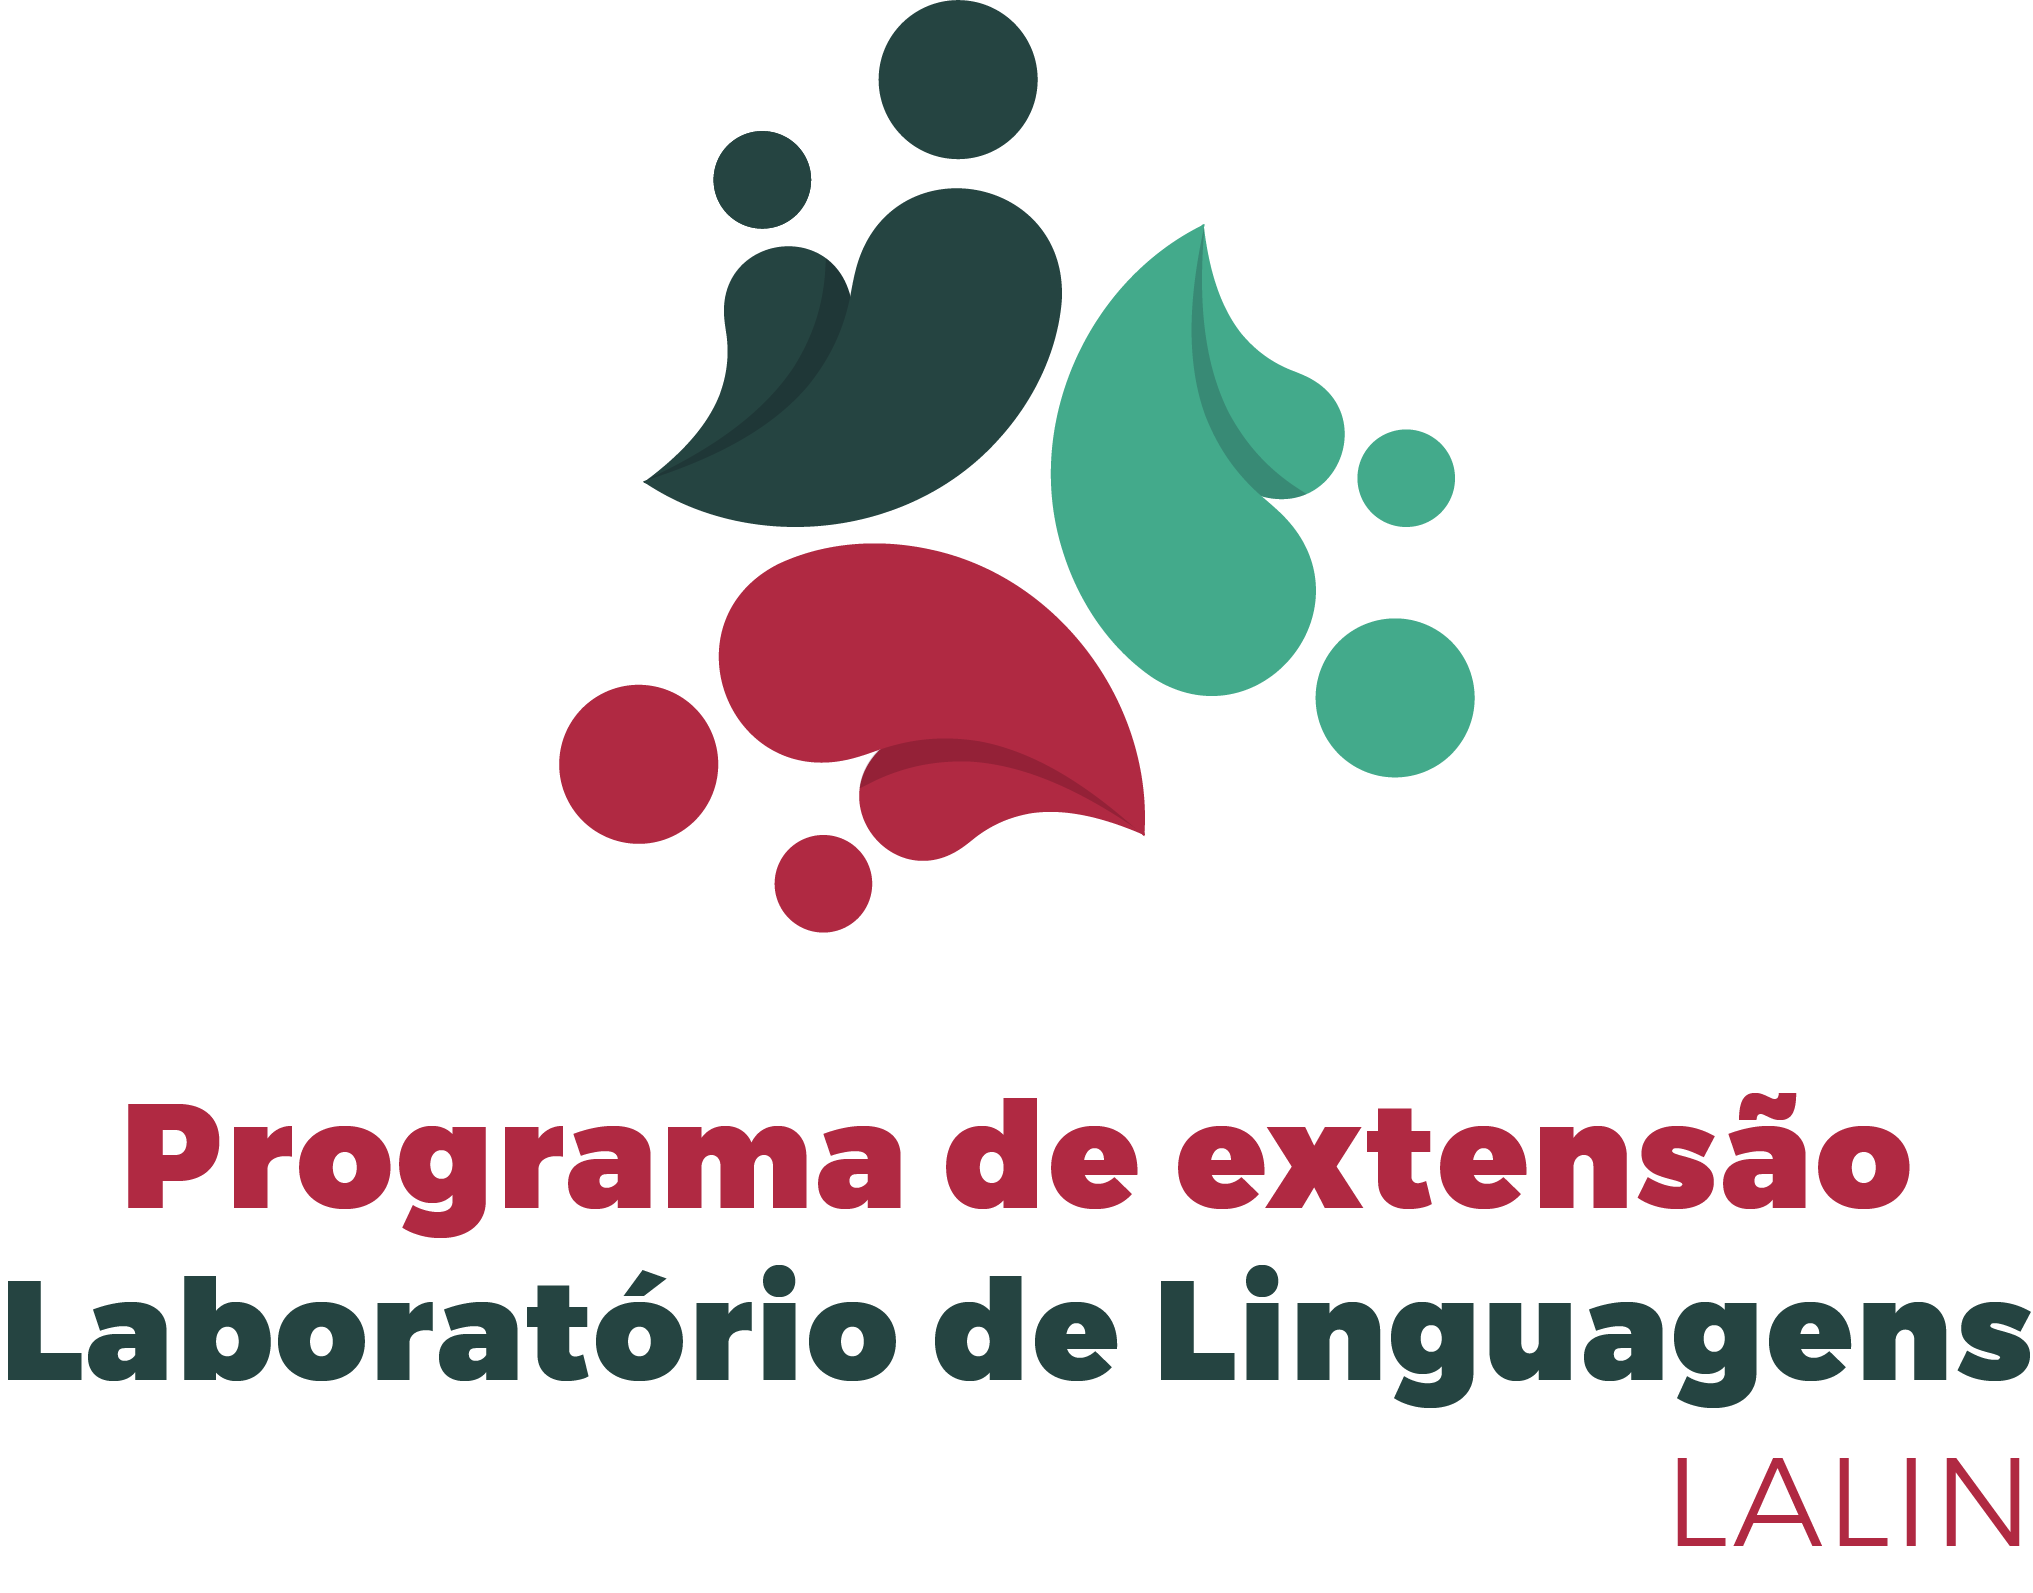 Programa de extensão – Laboratório de Linguagens: Pesquisa e Extensão em Ensino e Aprendizagem (LALIN)